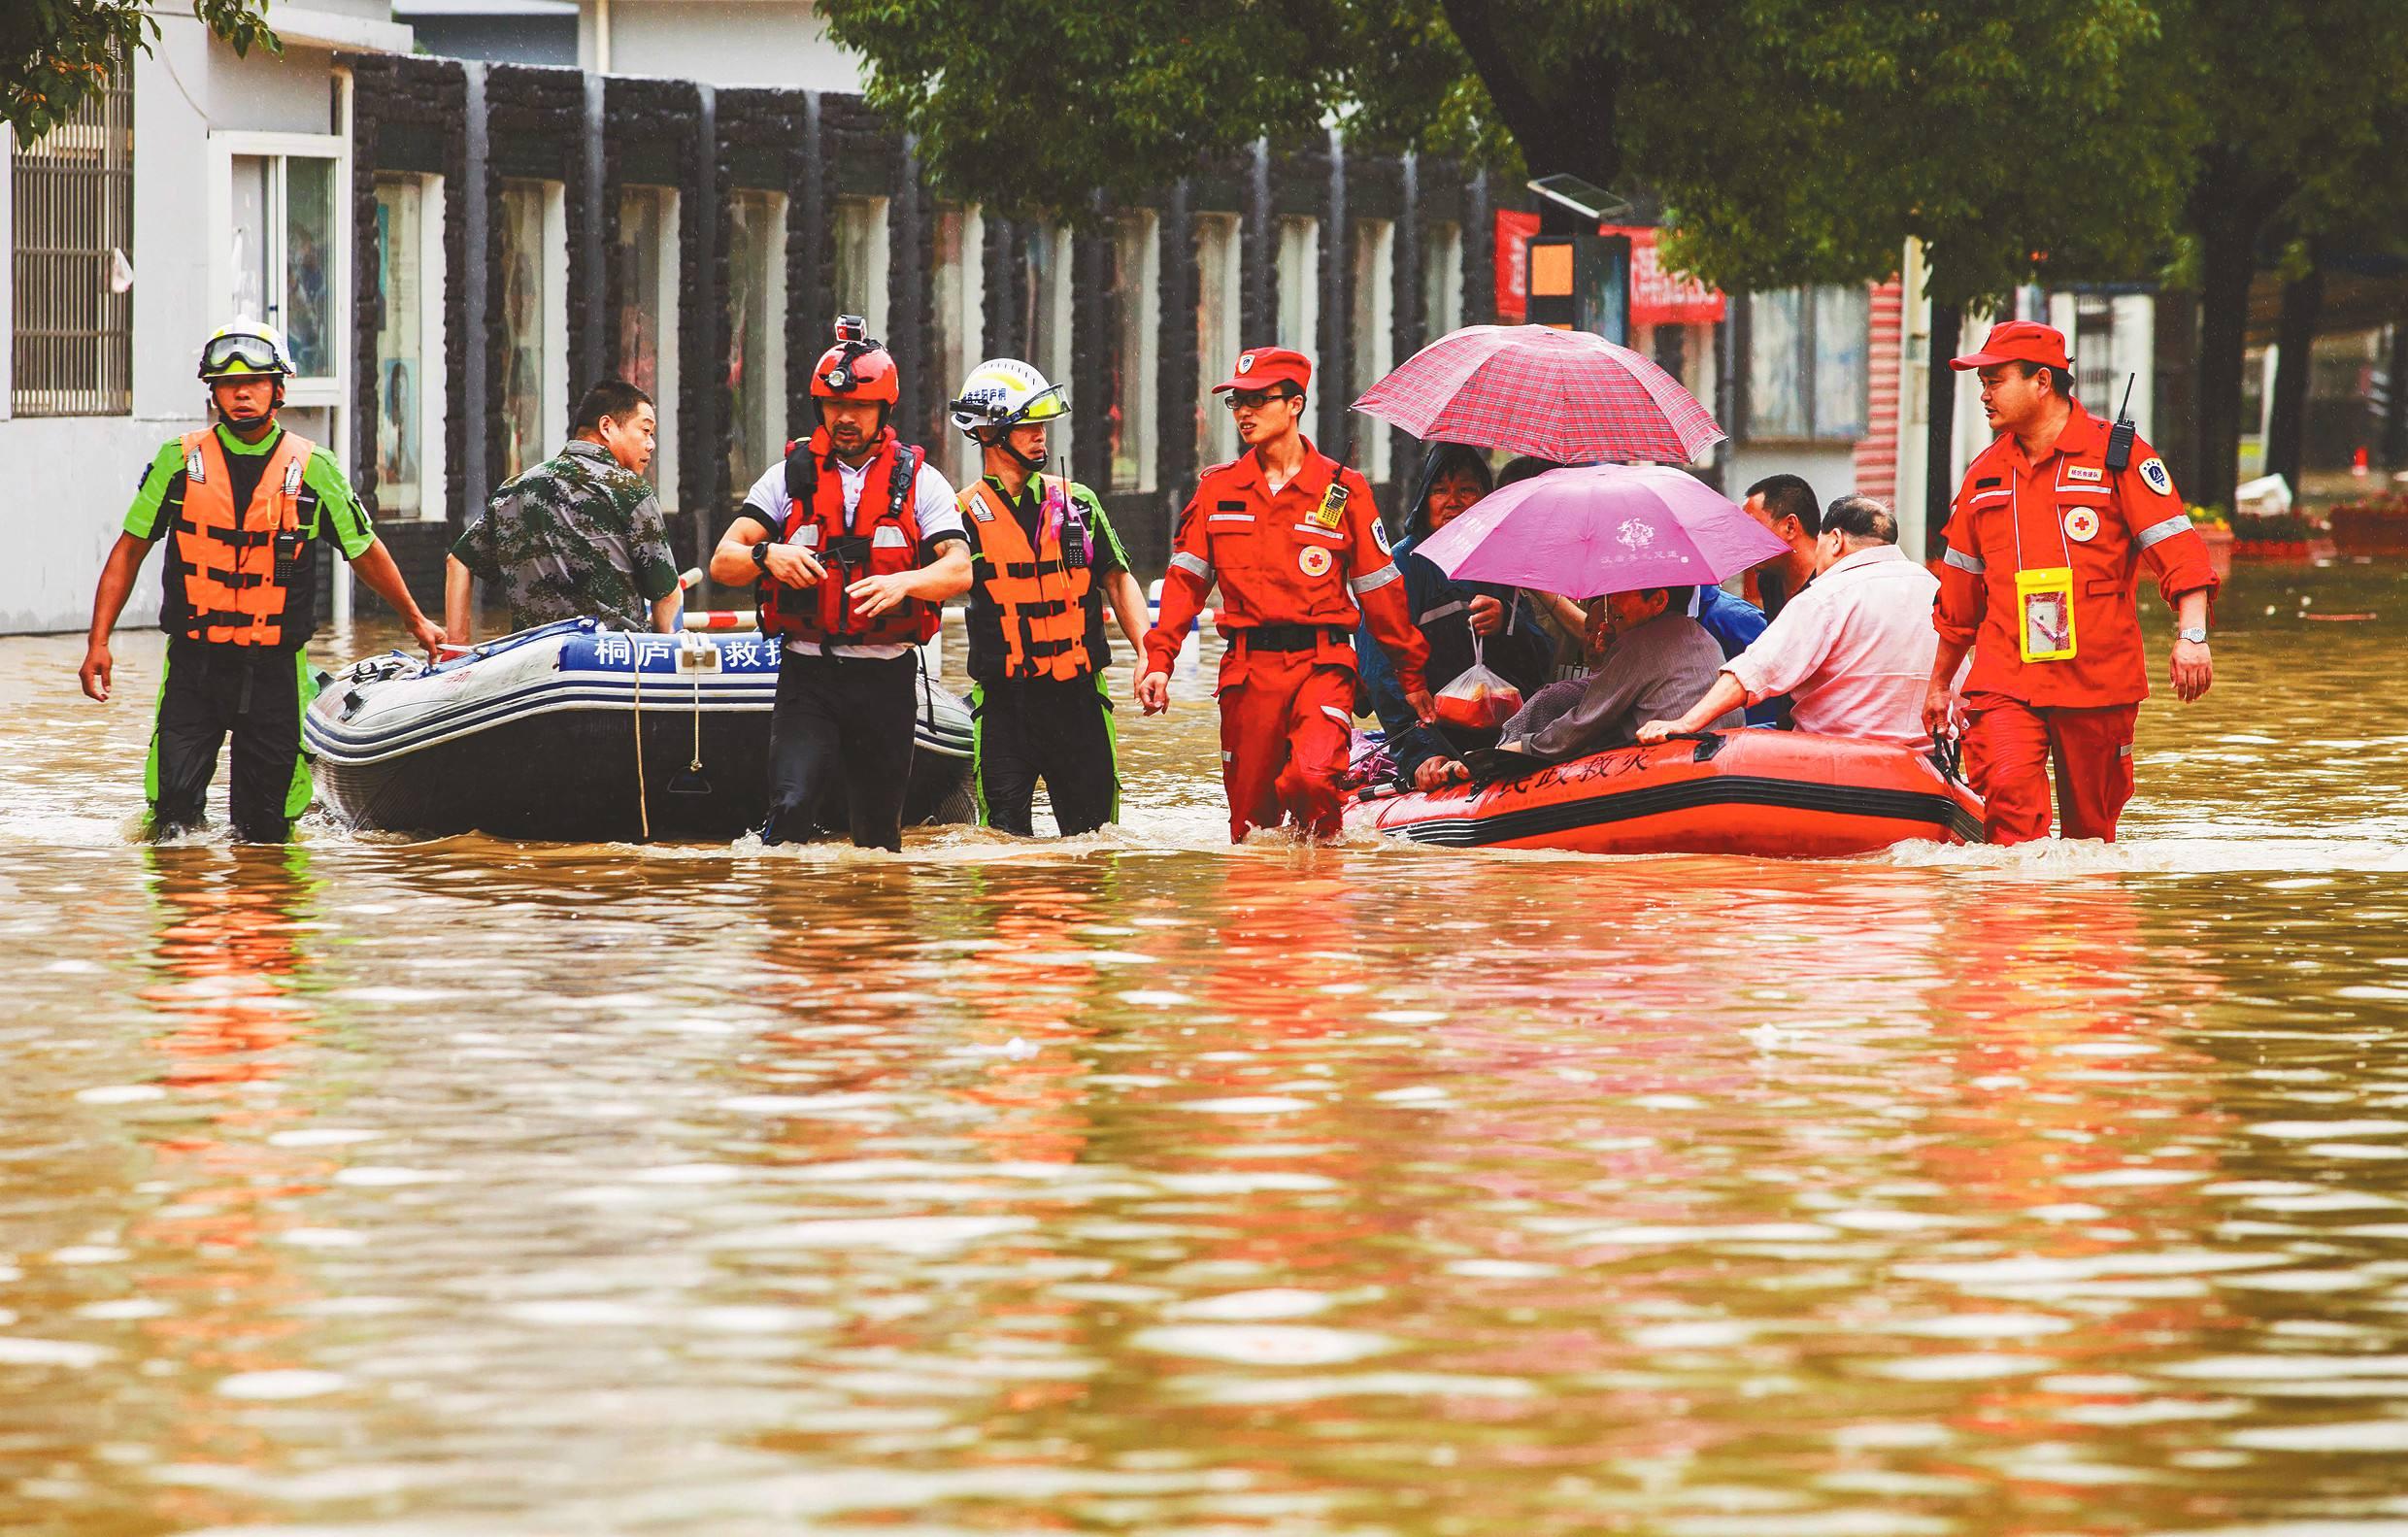 广西启动洪涝灾害IV级应急响应 强降雨天气将持续影响